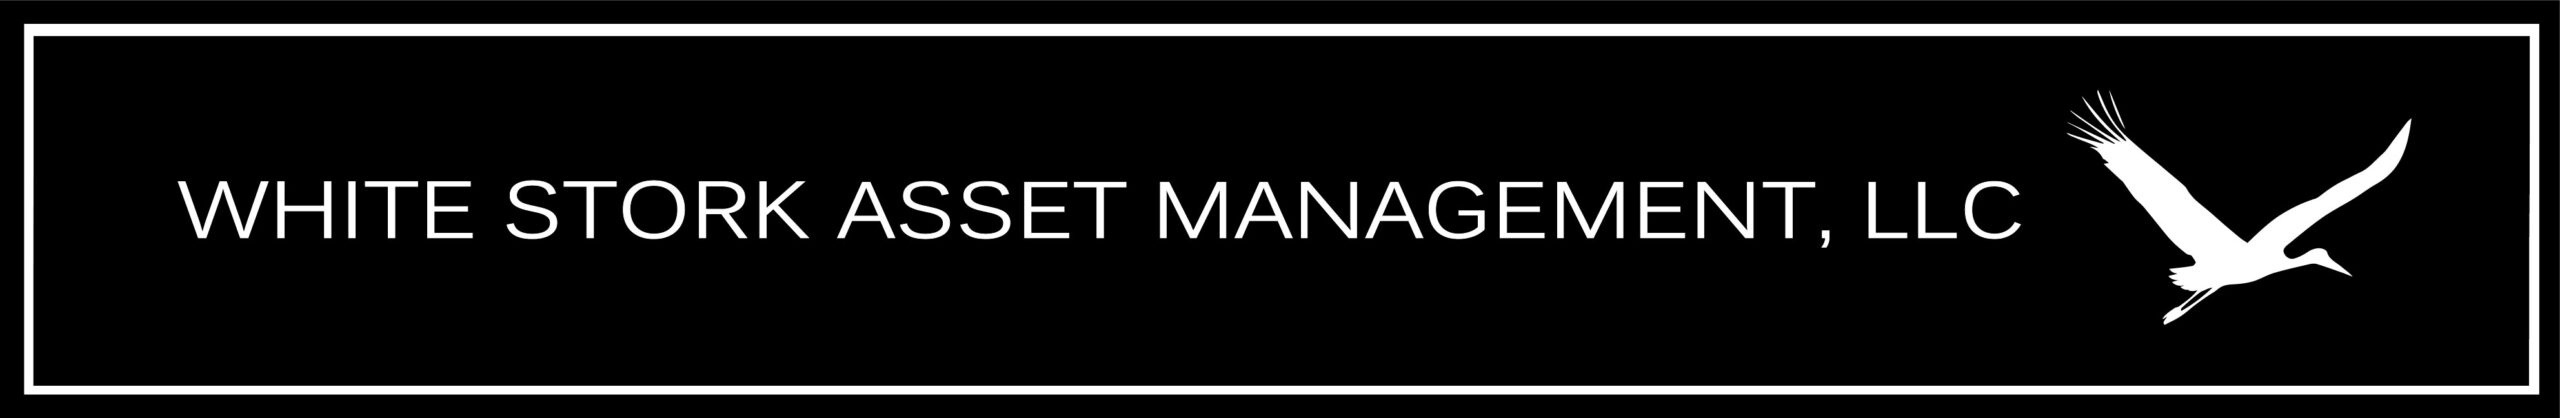 White Stork Asset Management, LLC